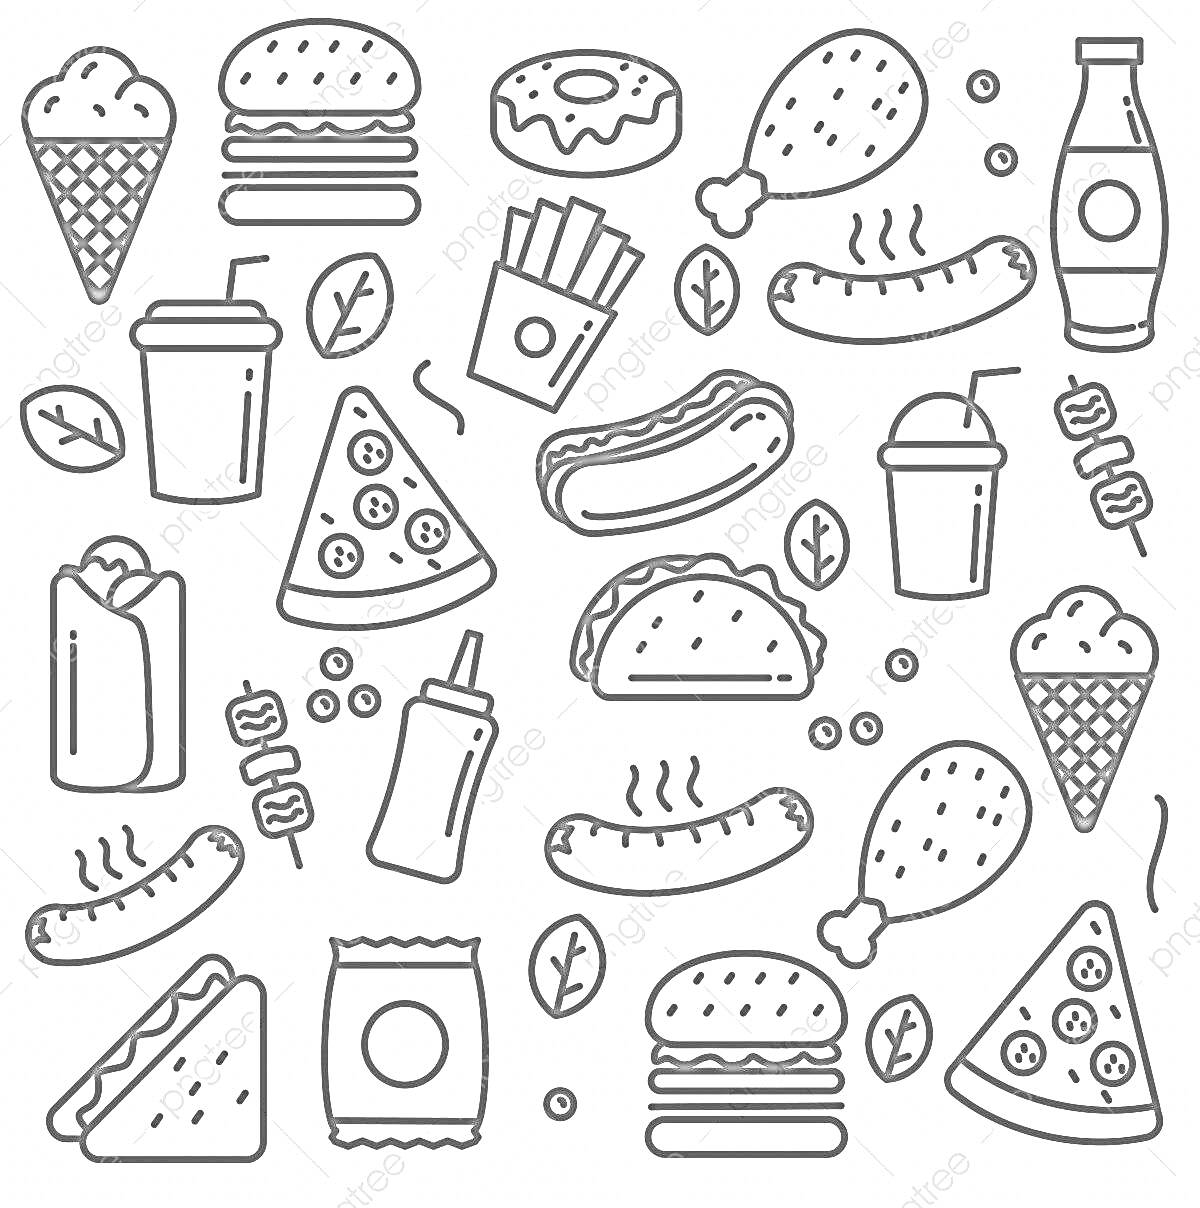 Мини еда — мороженое в вафельном рожке, гамбургеры, пончик, куриные ножки, бутылка с напитком, картофель фри, хот-дог, напиток в стакане с трубочкой, пицца, тако, кетчуп, завёрнутая шаурма или буррито, чипсы, сосиски на шпажке